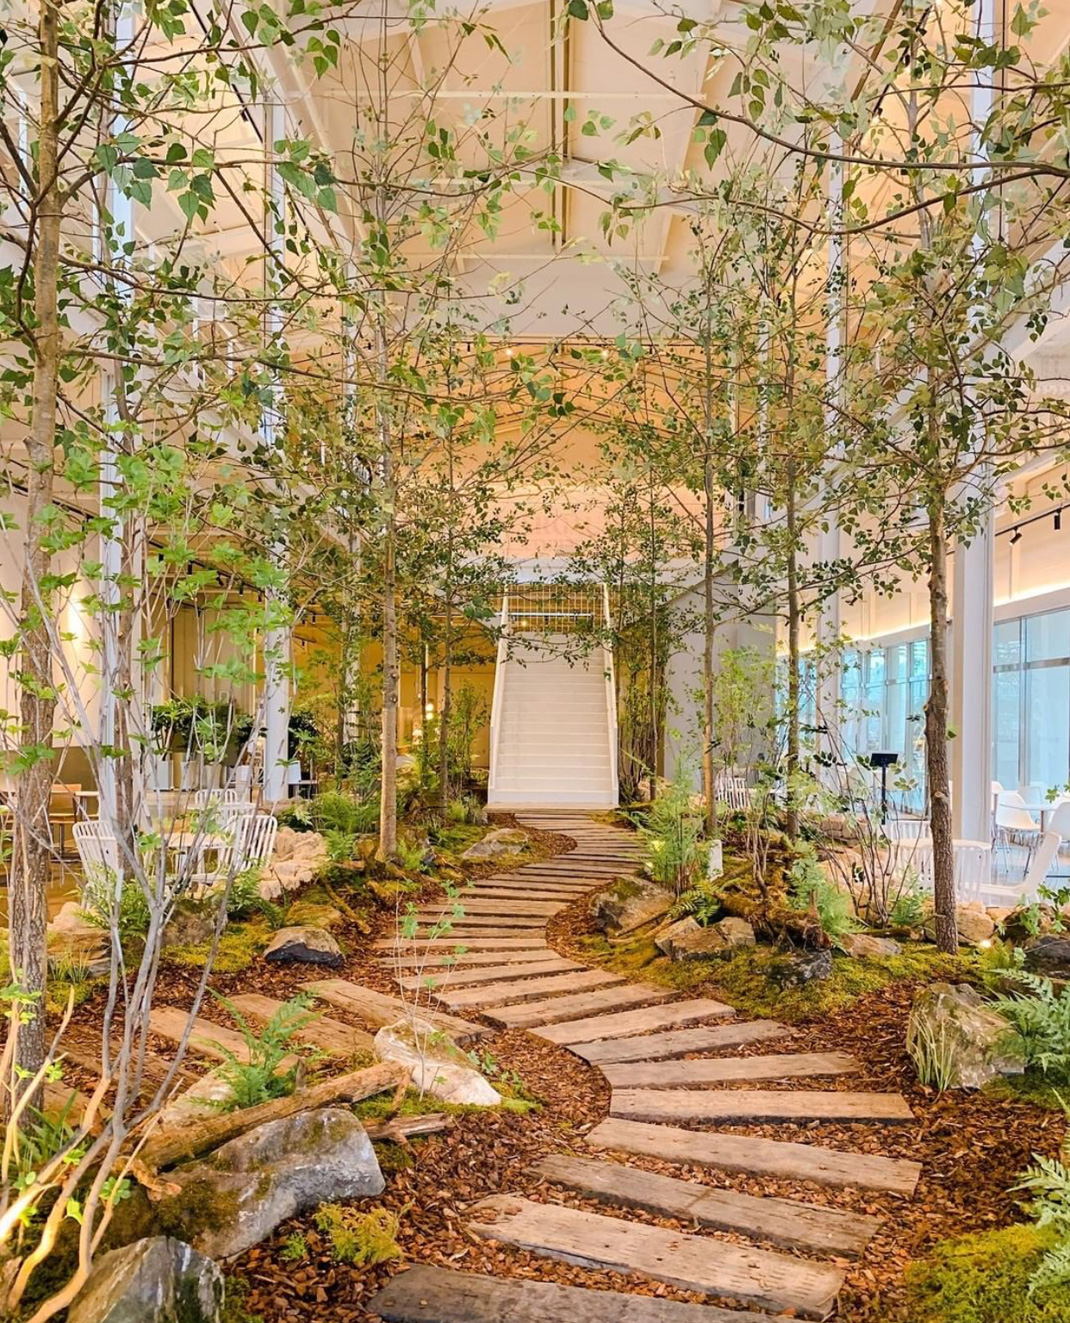 森林中的咖啡馆 韩国 咖啡馆 室内 绿植 森林 景观 logo设计 vi设计 空间设计